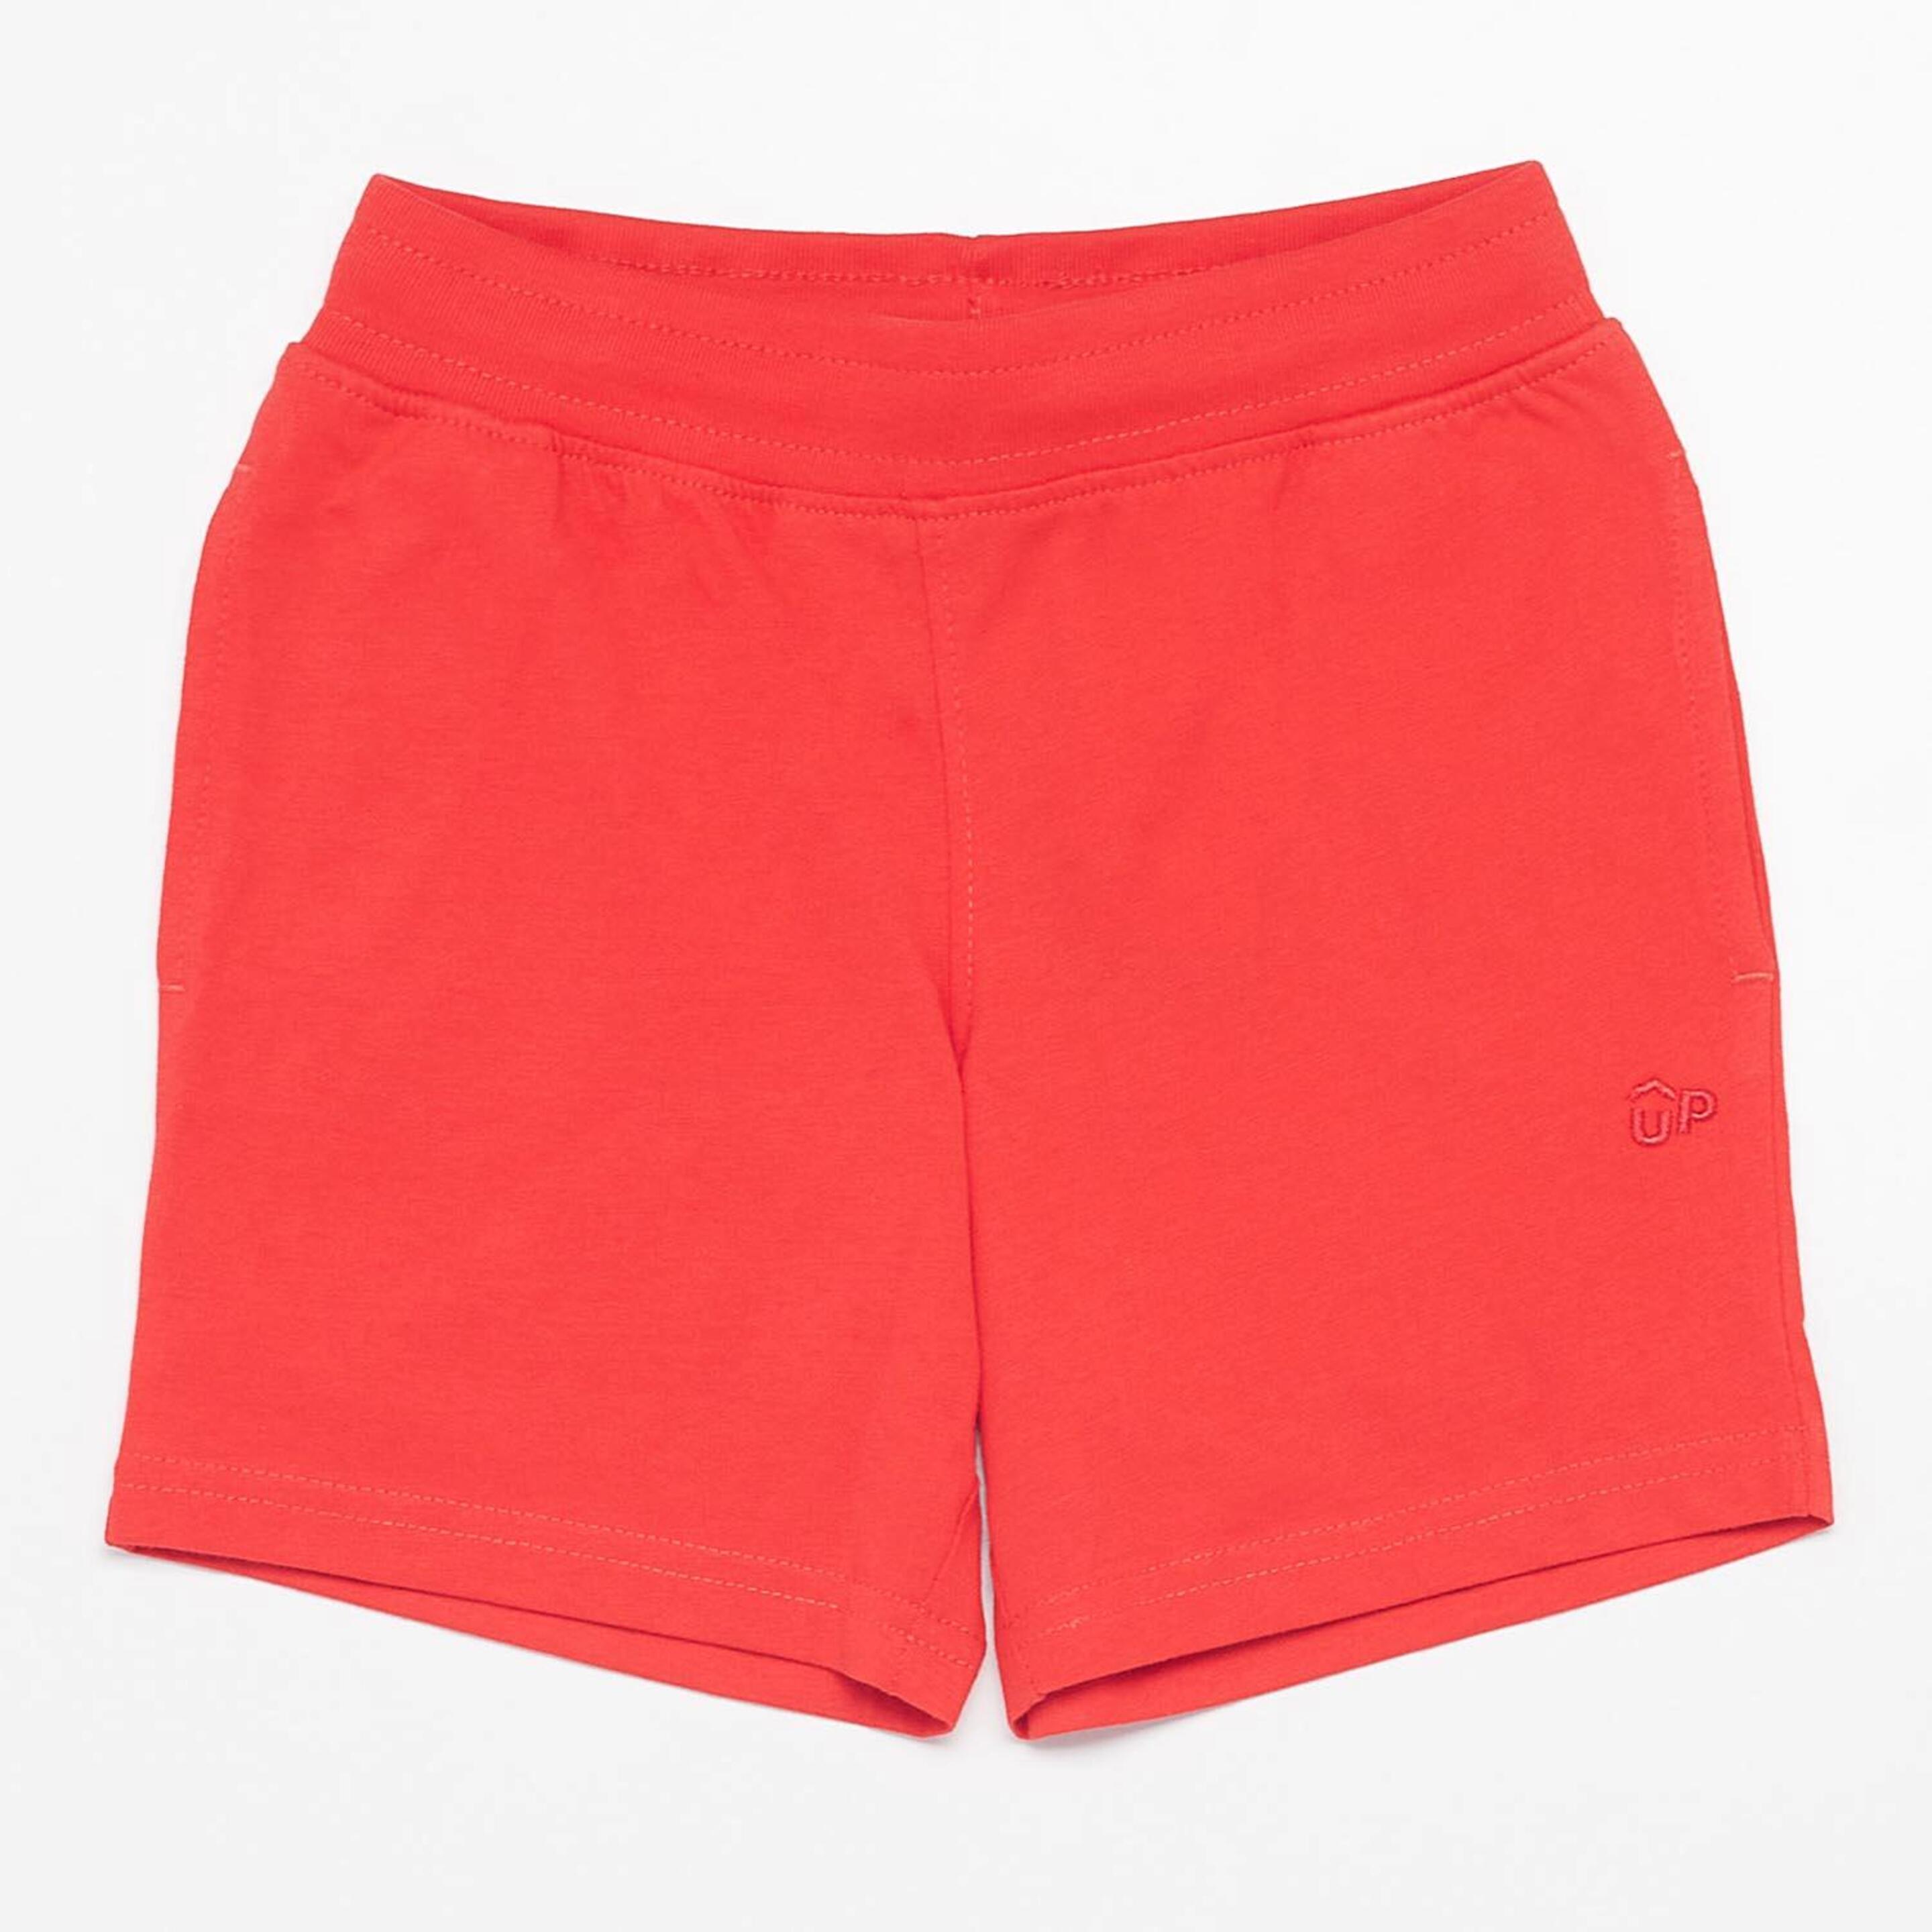 Pantalón Corto Up Basic - rojo - Bermudas Niño